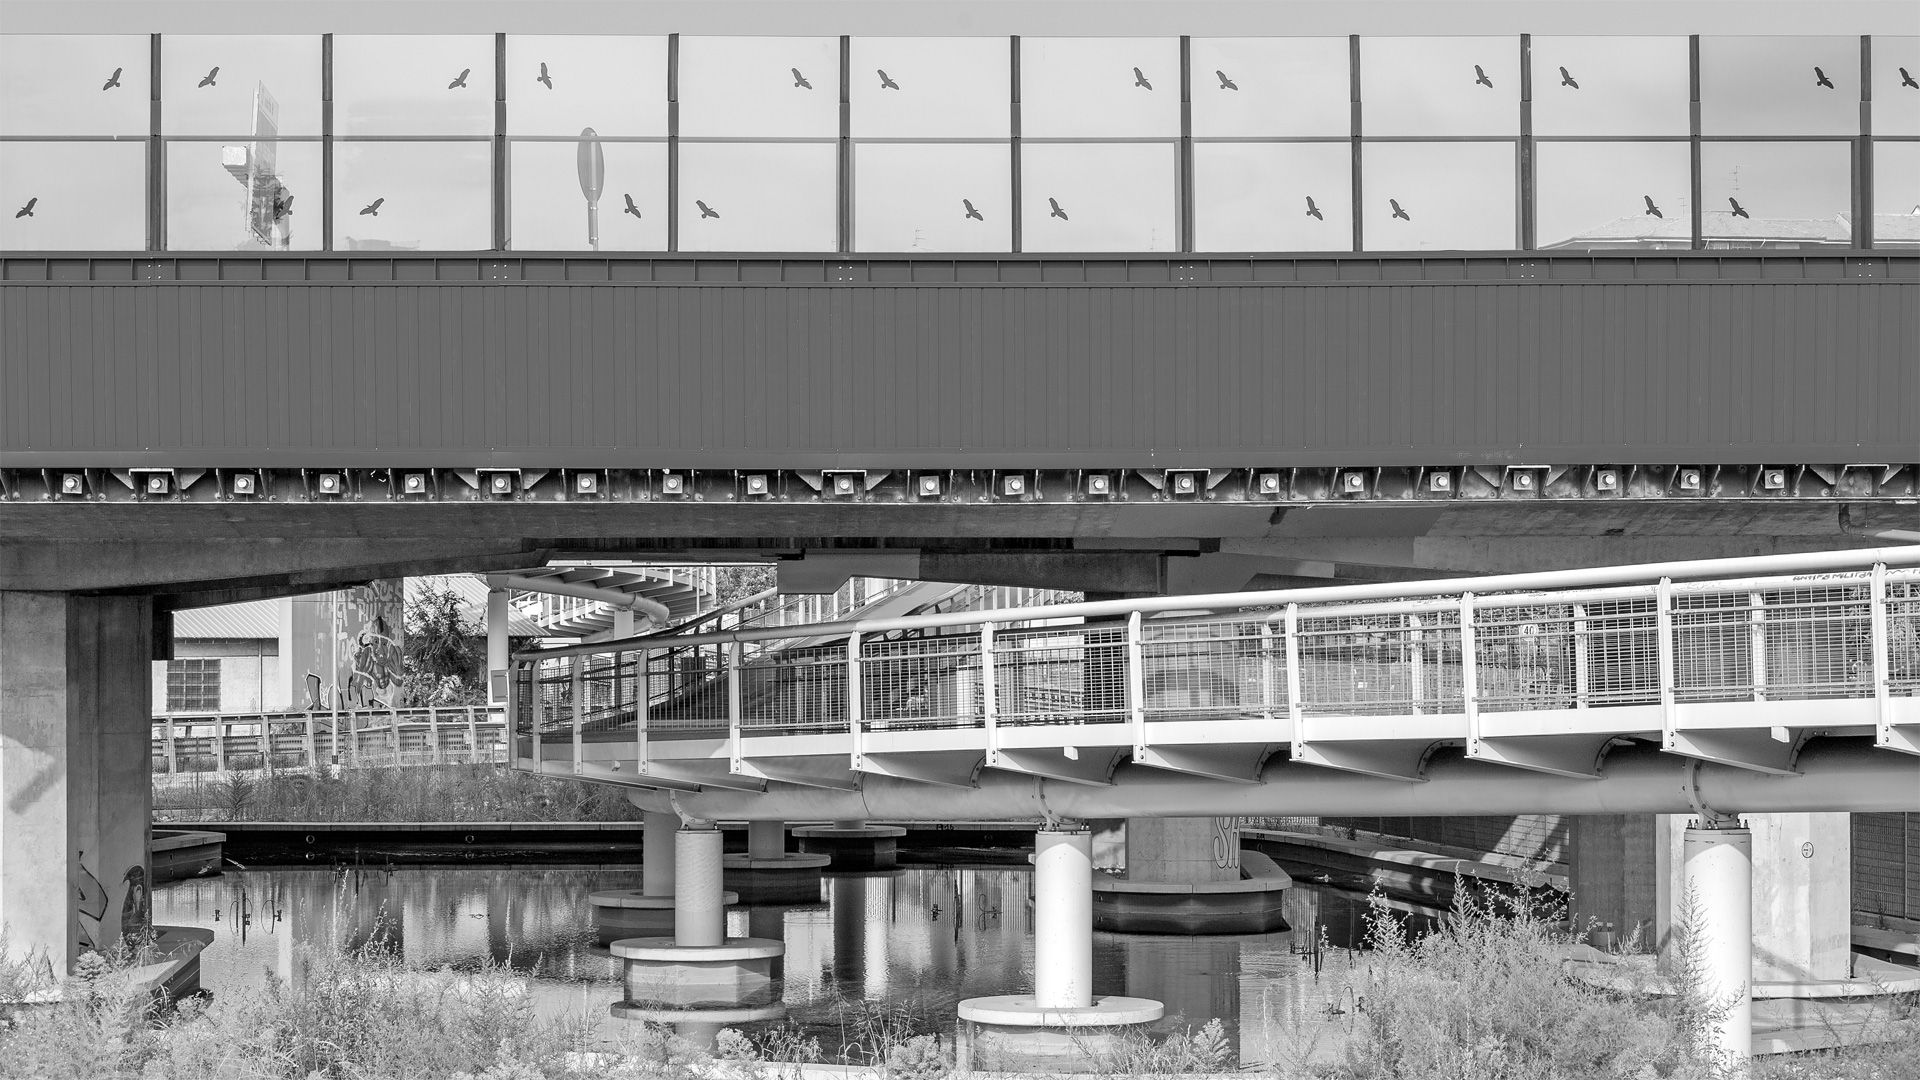 Vista ponti e passerella ciclopedonale (foto G. Albo)